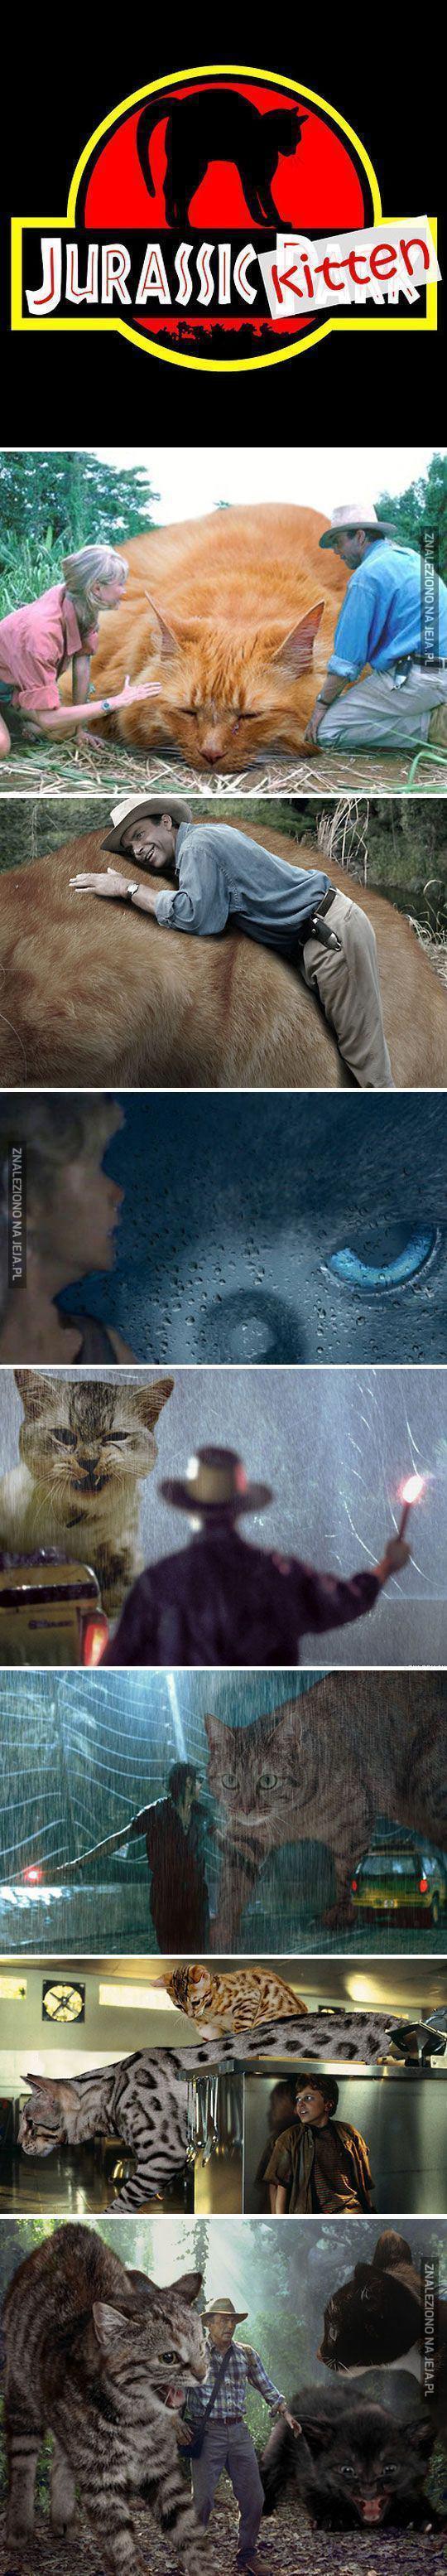 A gdyby to był film o wielkich kotach...?